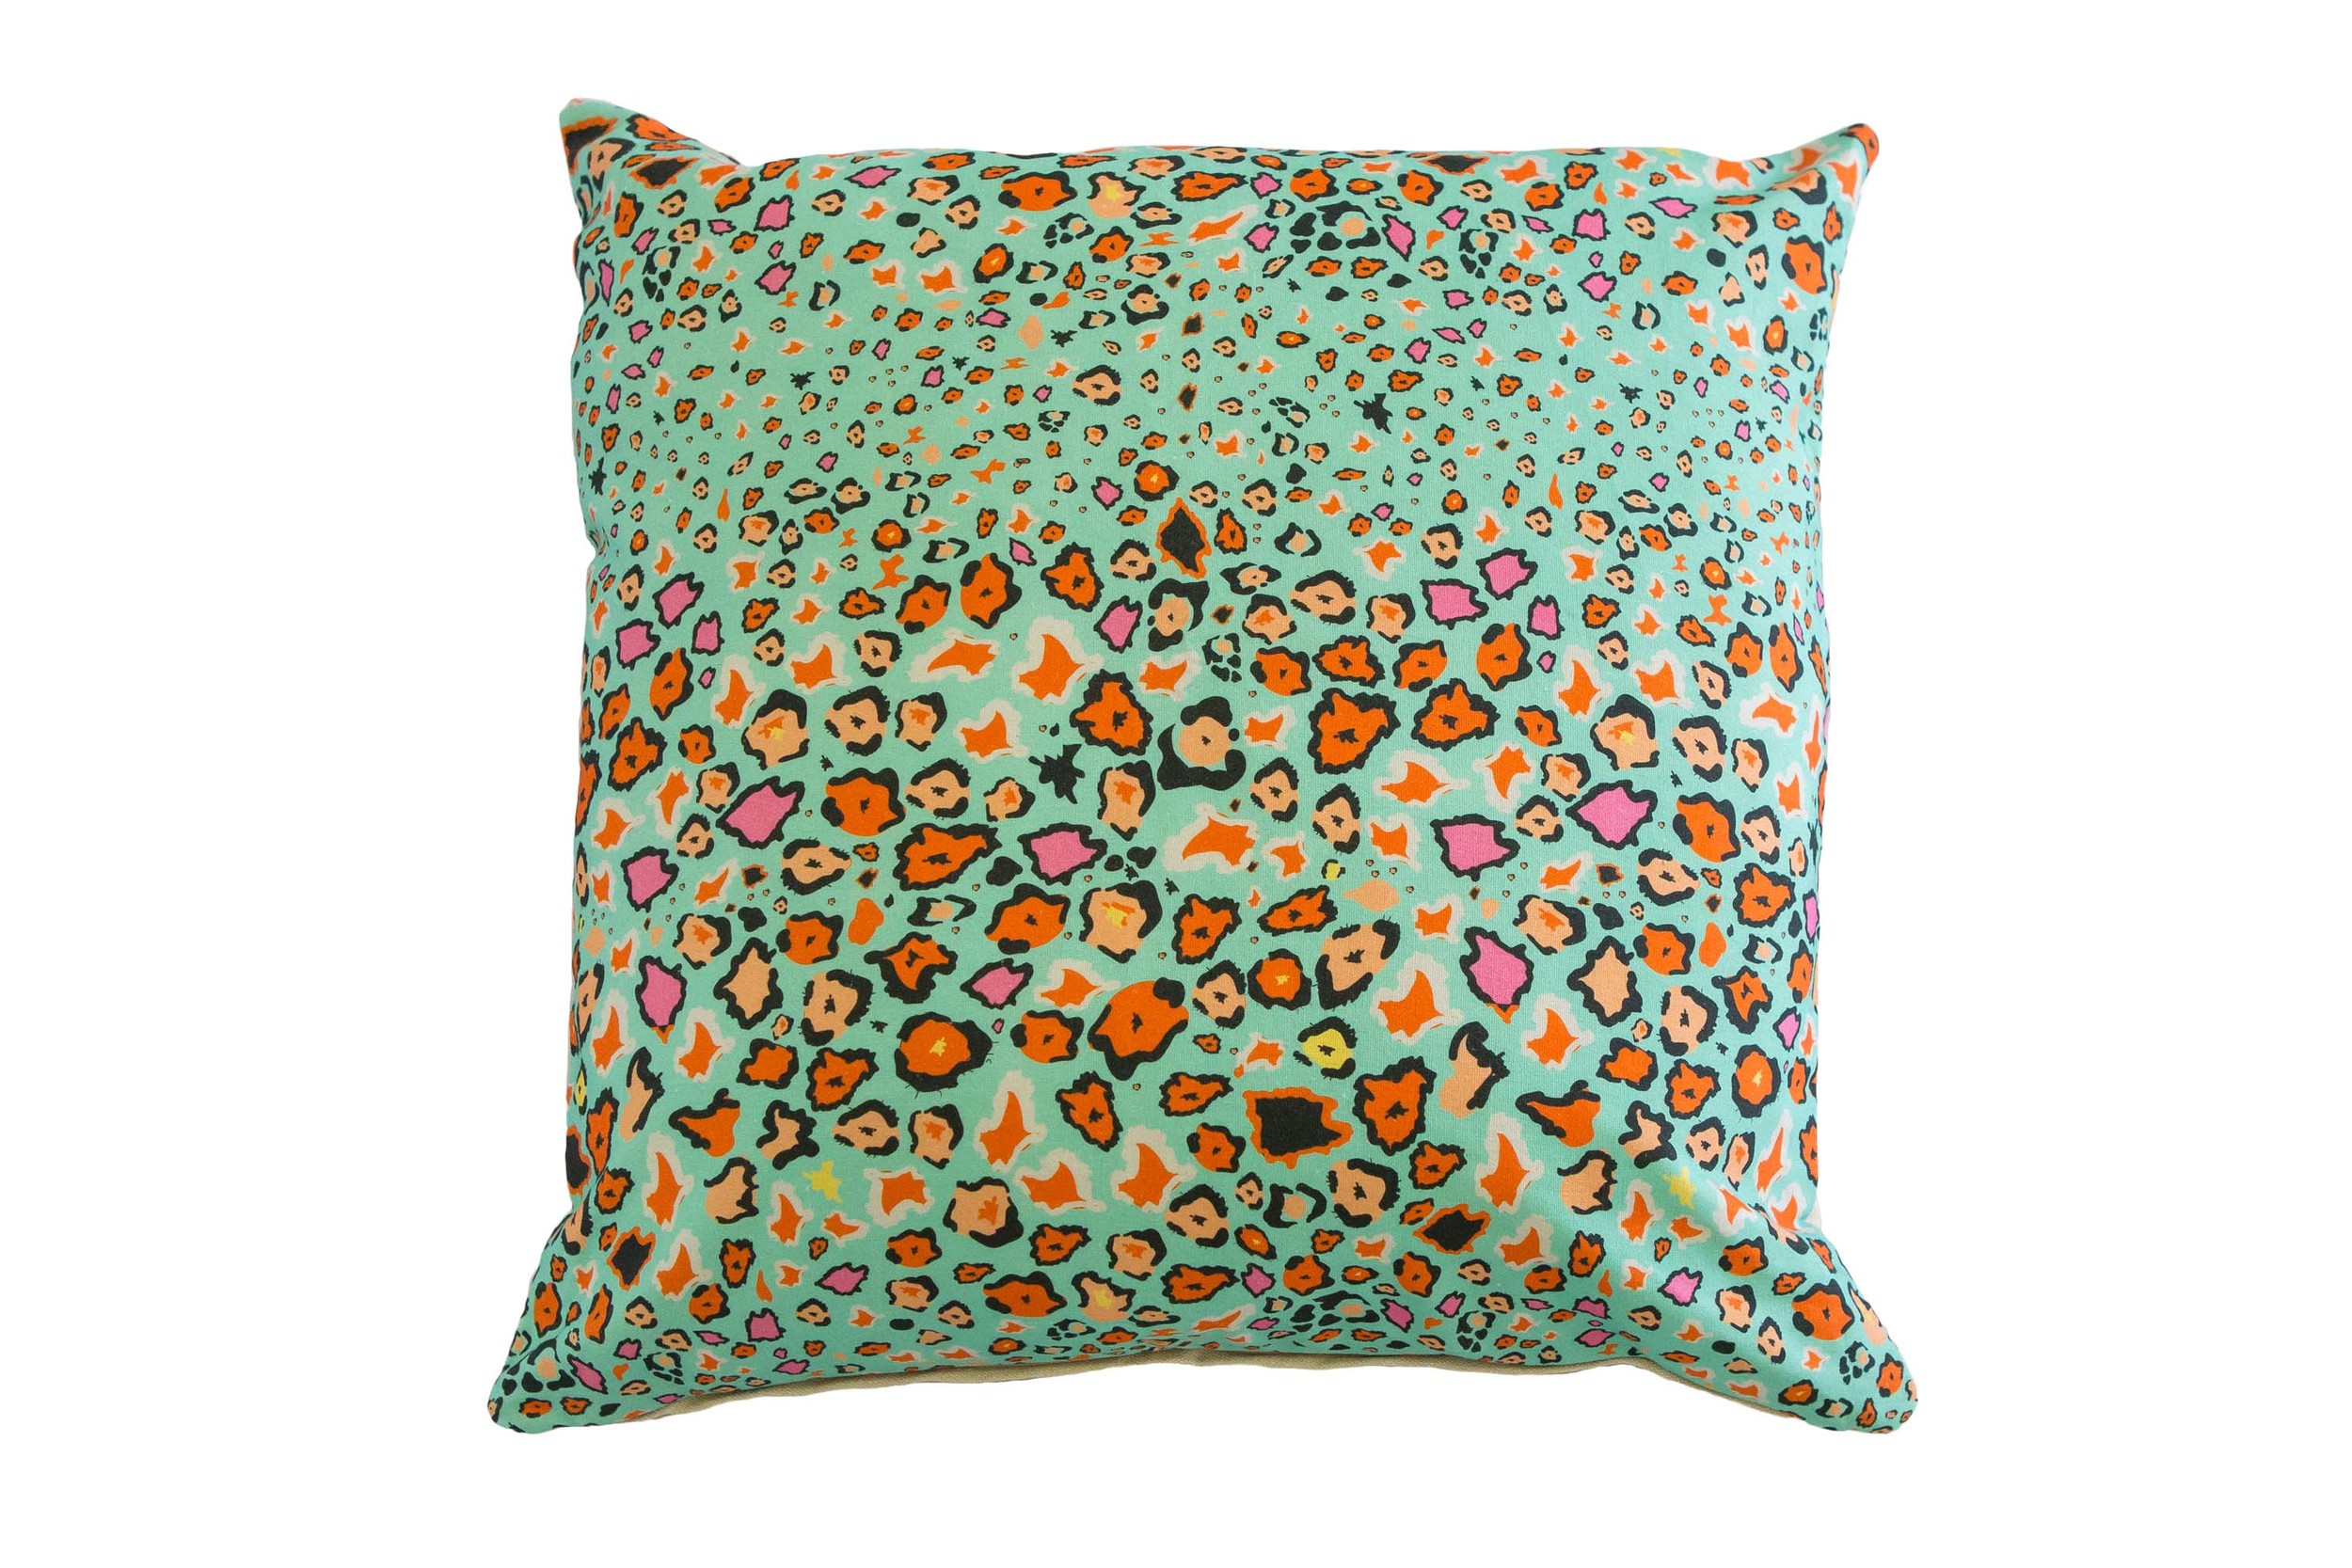 Leopard Lights cushion: leopard print + colour pop = home decor win